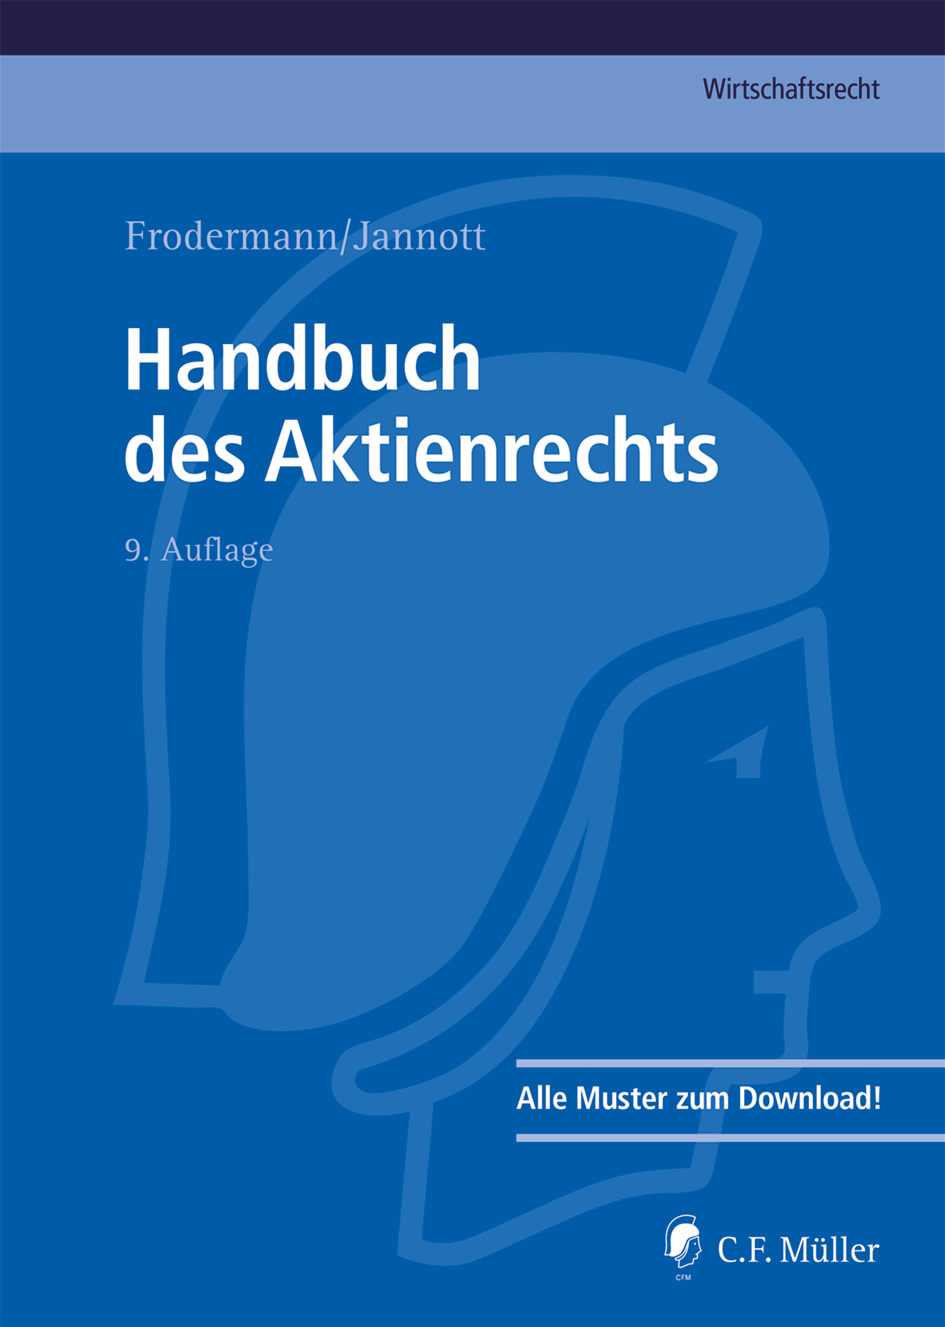 Abbildung: Handbuch des Aktienrechts